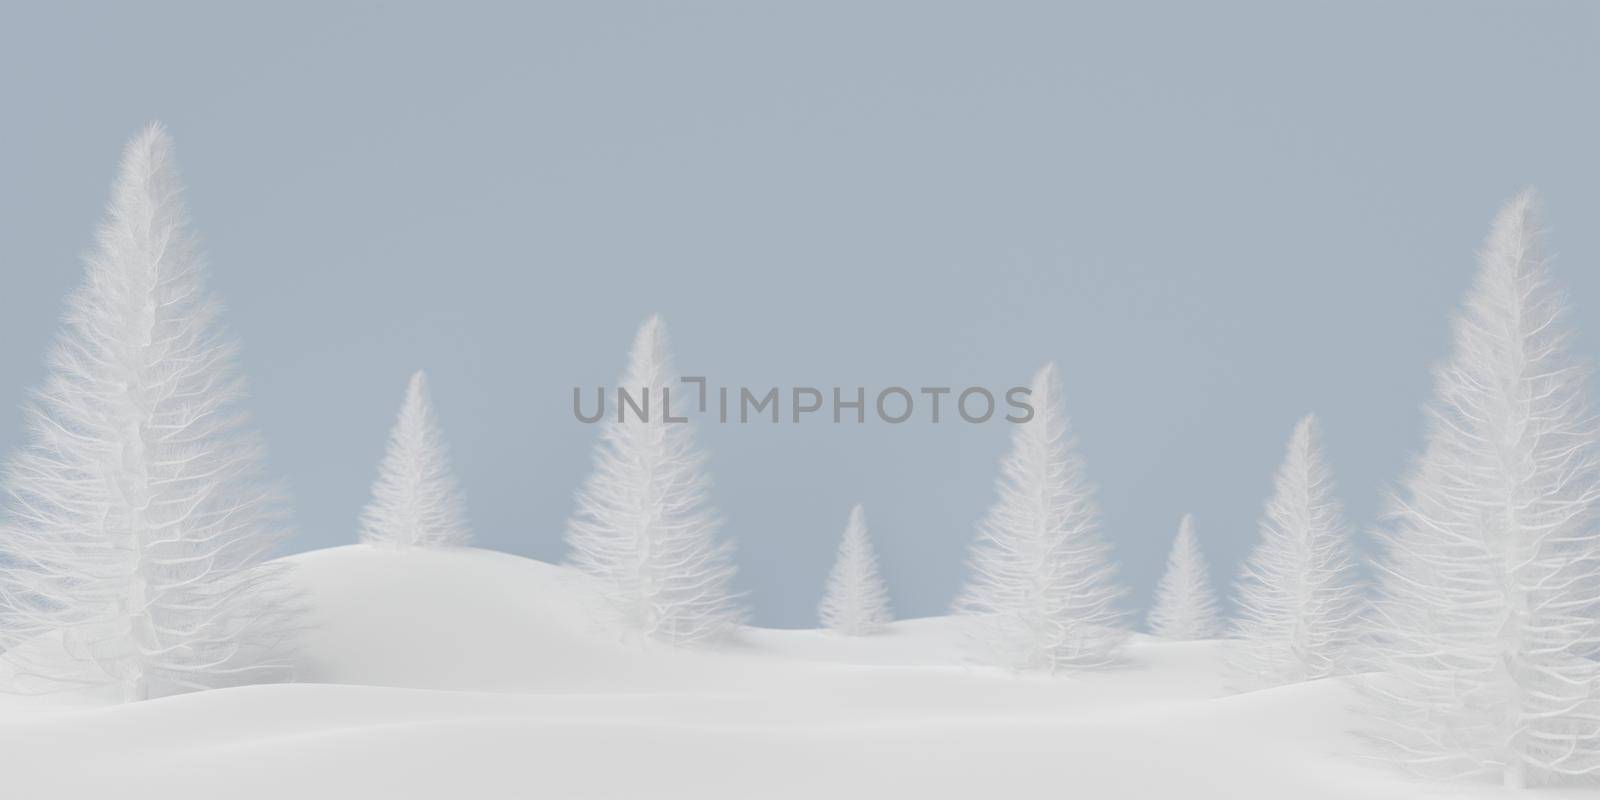 3d illustration blur background of pine forest on snow ground by nutzchotwarut